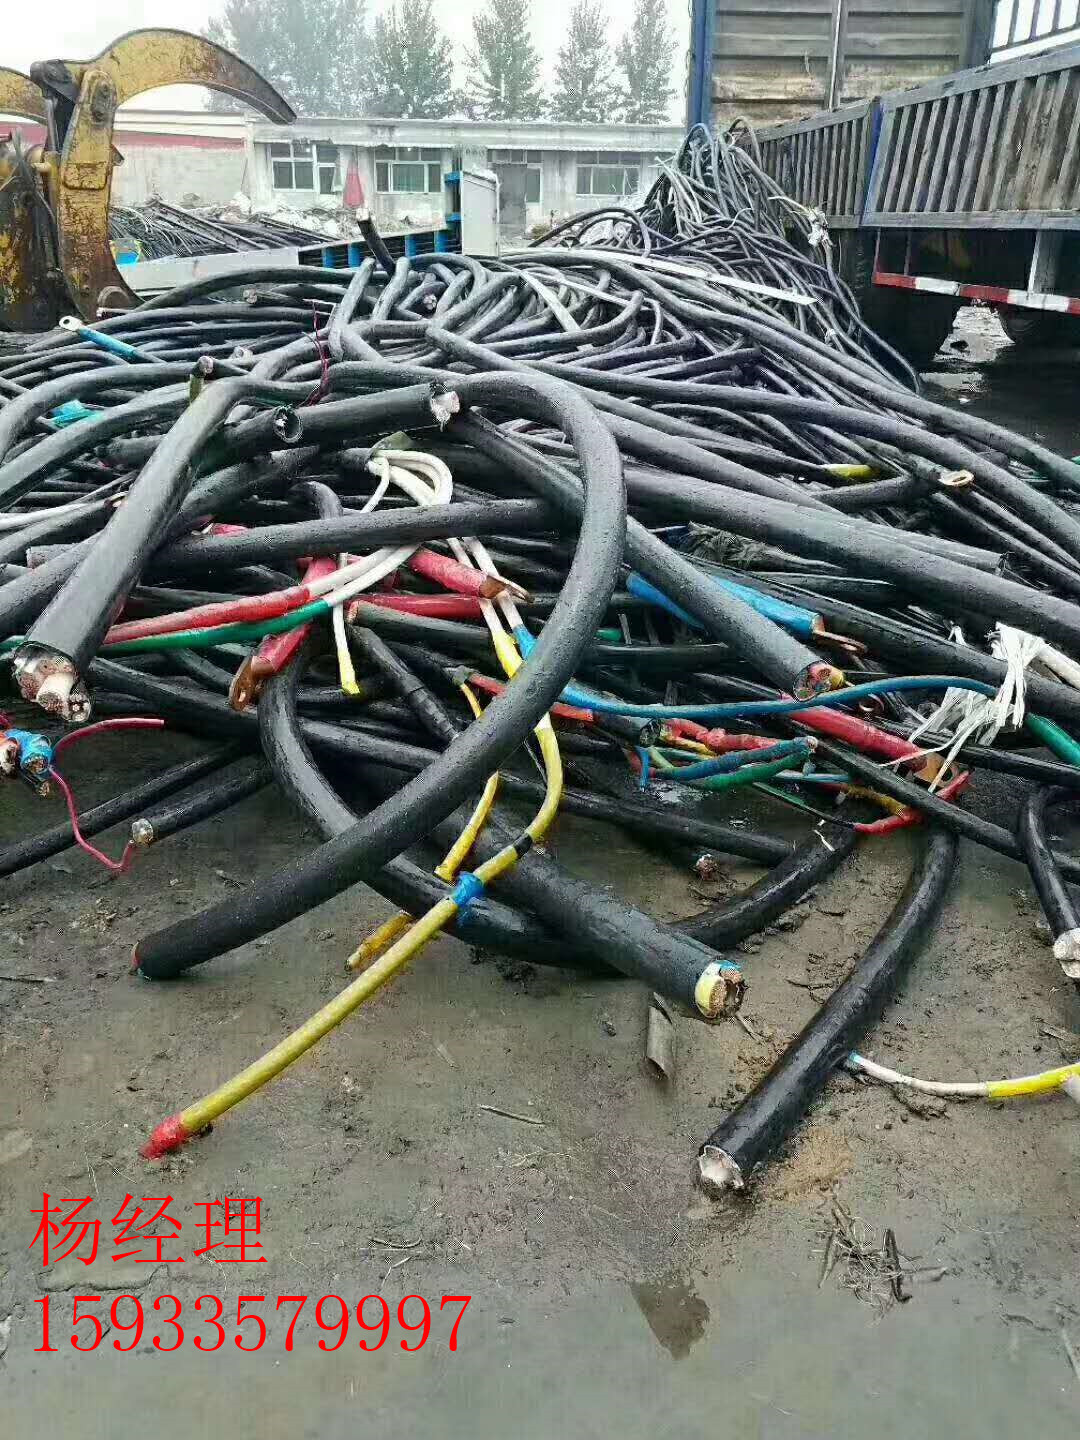 山西忻州射频电缆回收联系    近